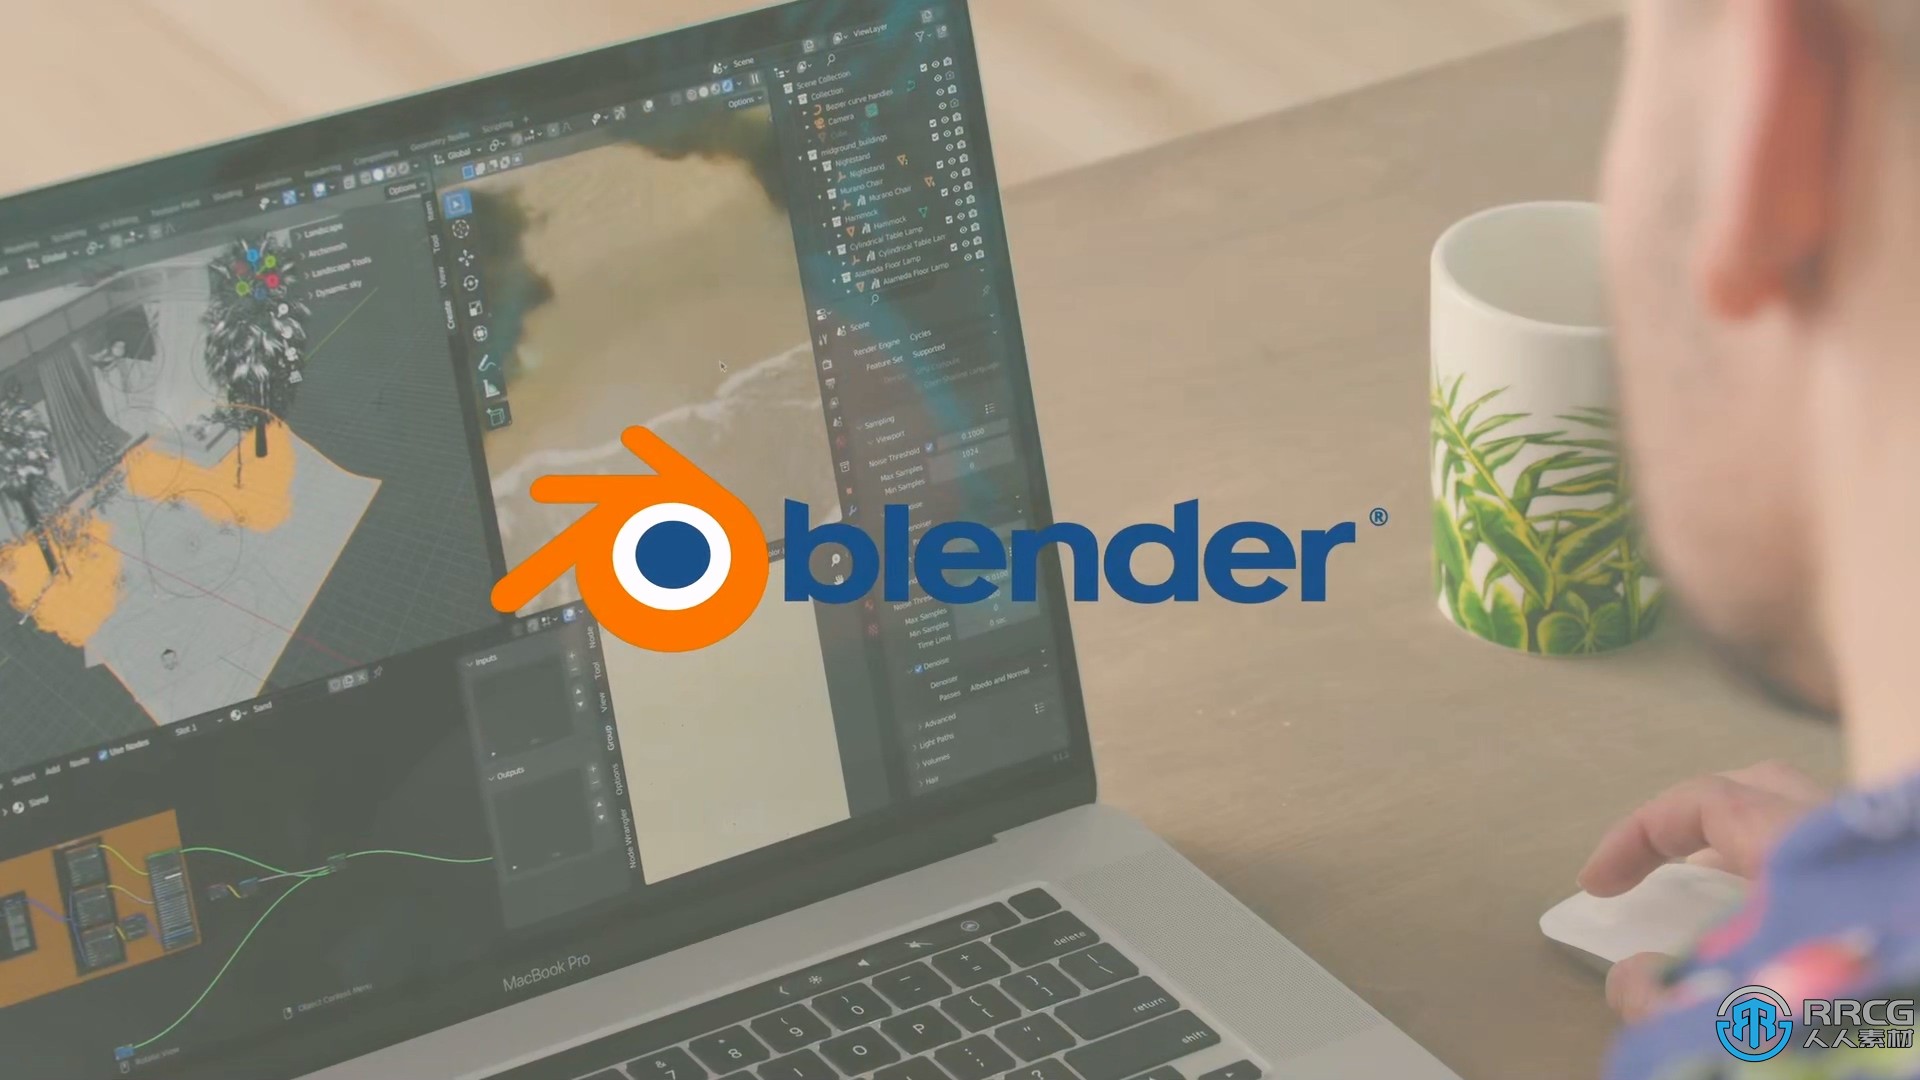 【中文字幕】Blender逼真3D场景渲染核心技术视频教程